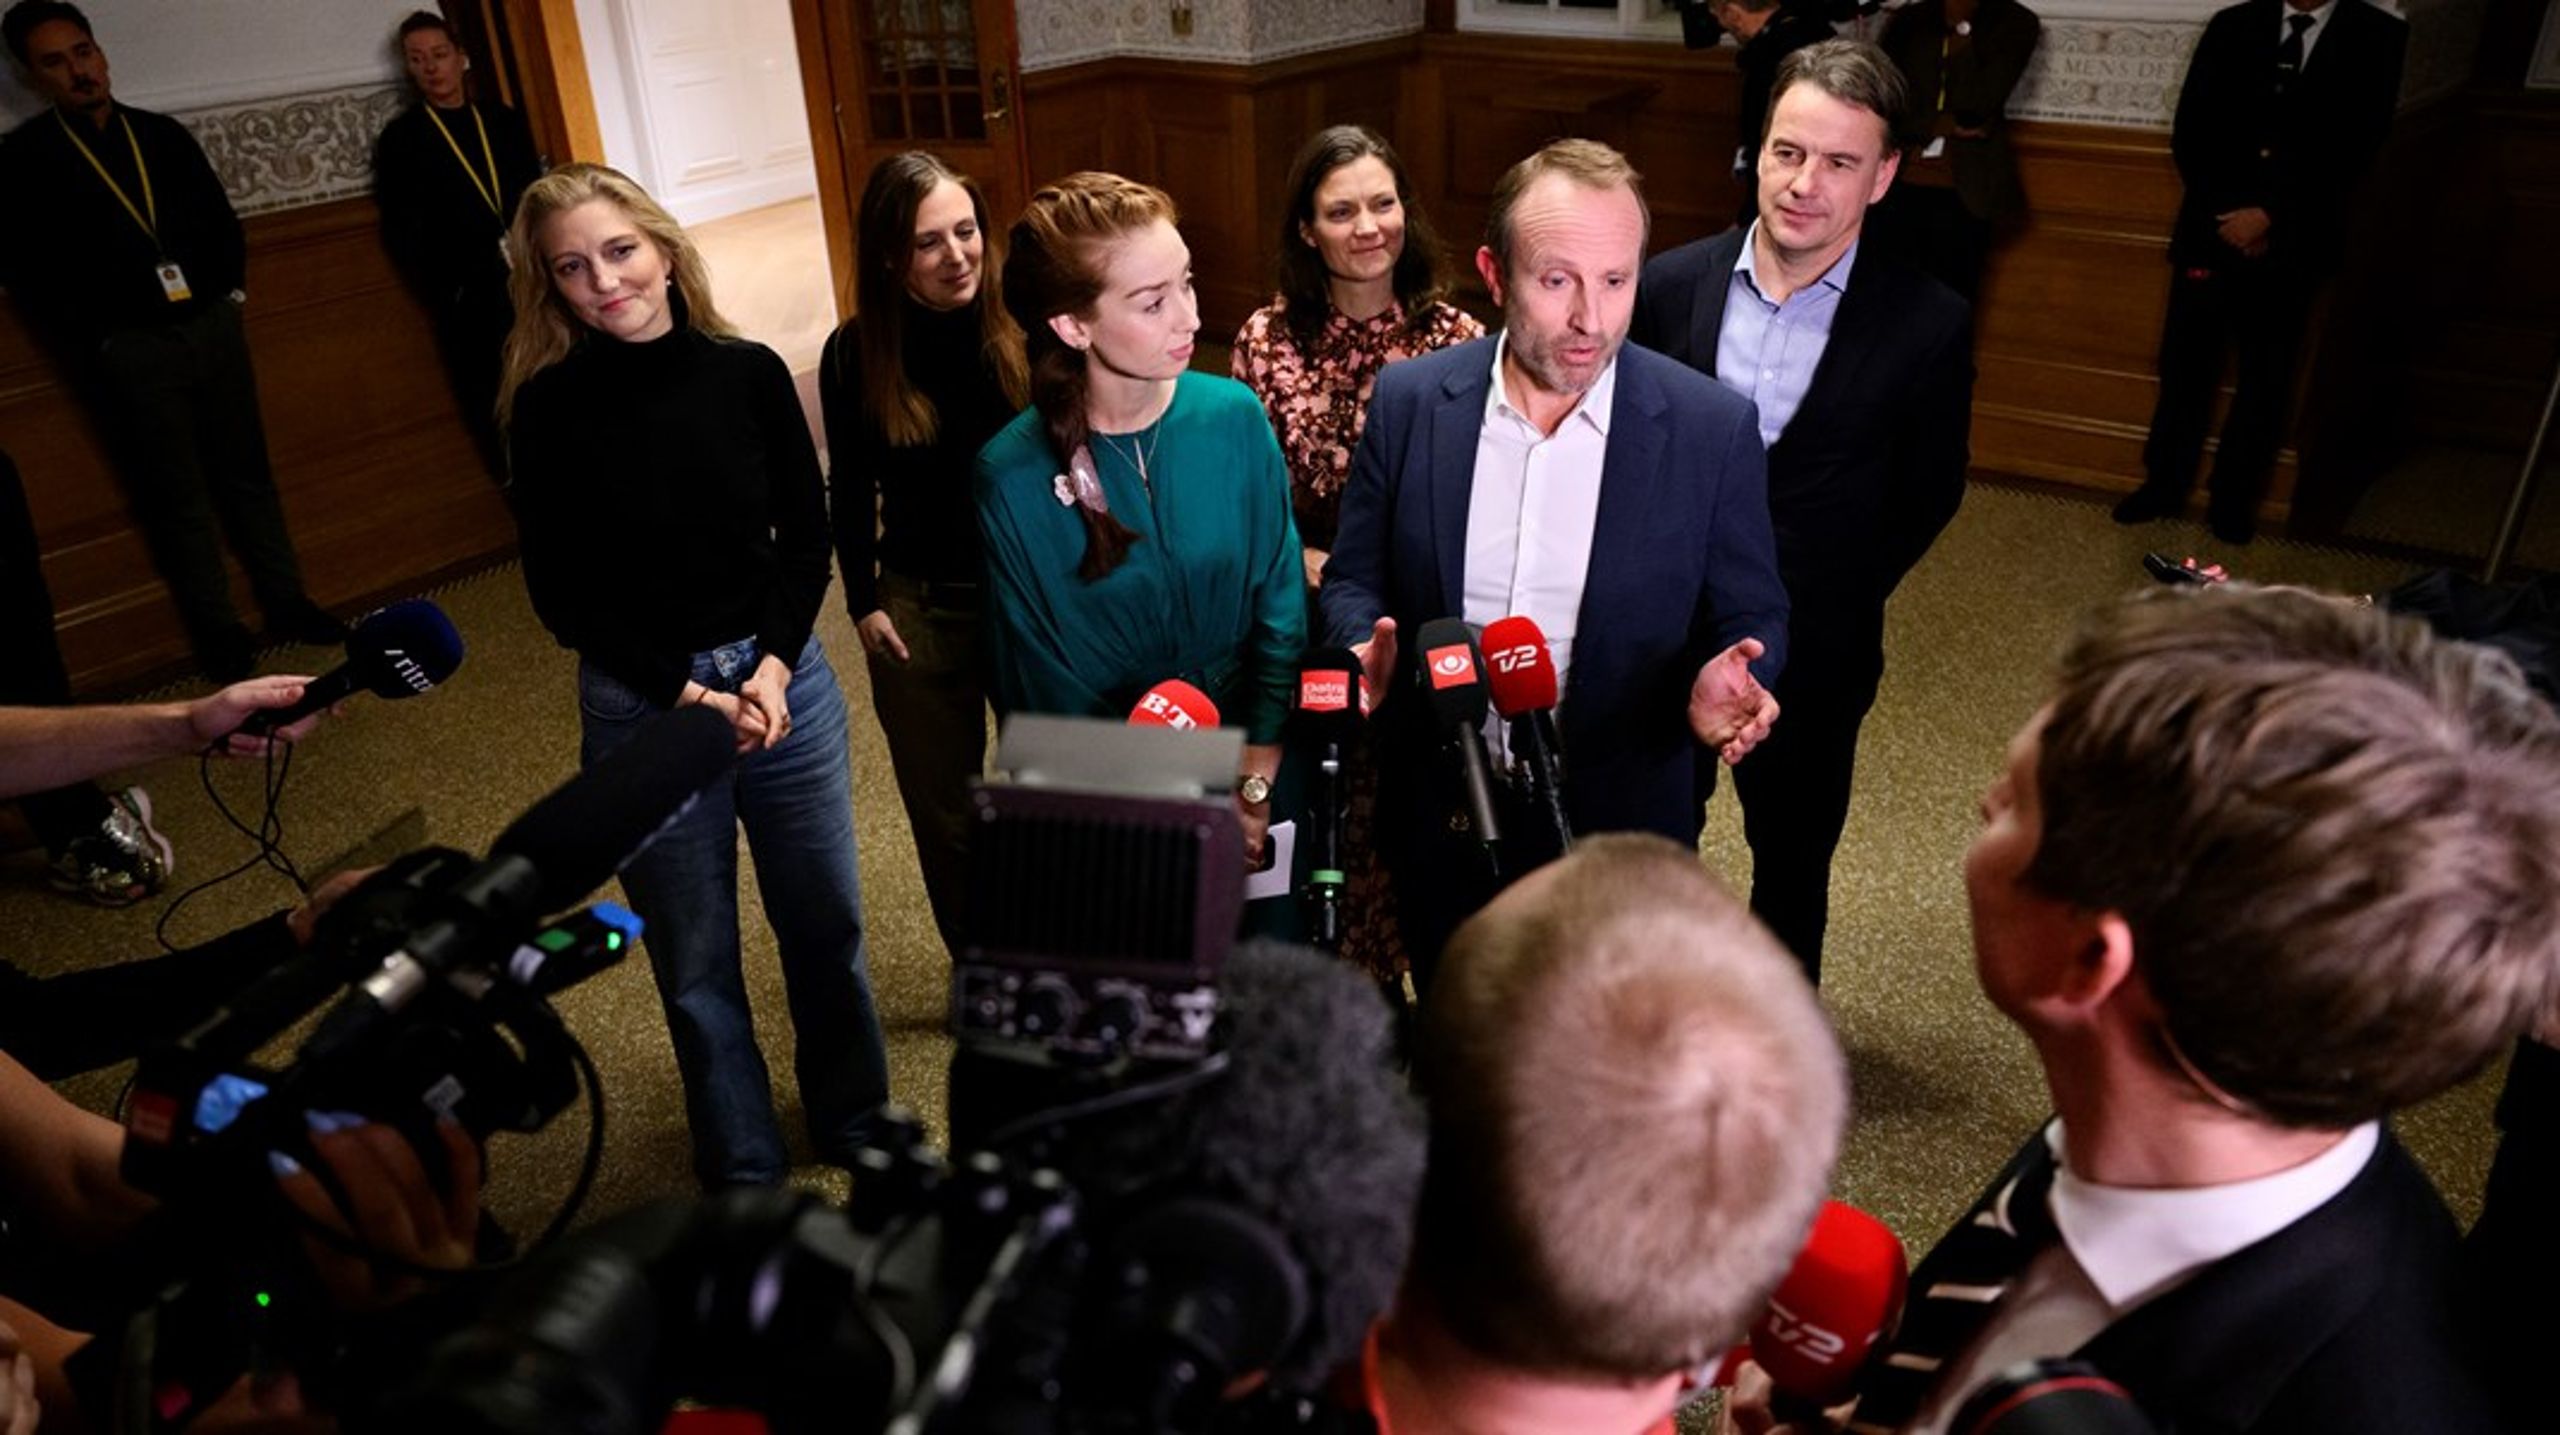 "Det kan godt være, at det er en lille folketingsgruppe, men den består af stærke, erfarne profiler, der kan tegne et stærkt Radikalt Venstre med en ny start fra i dag," siger Martin Lidegaard.